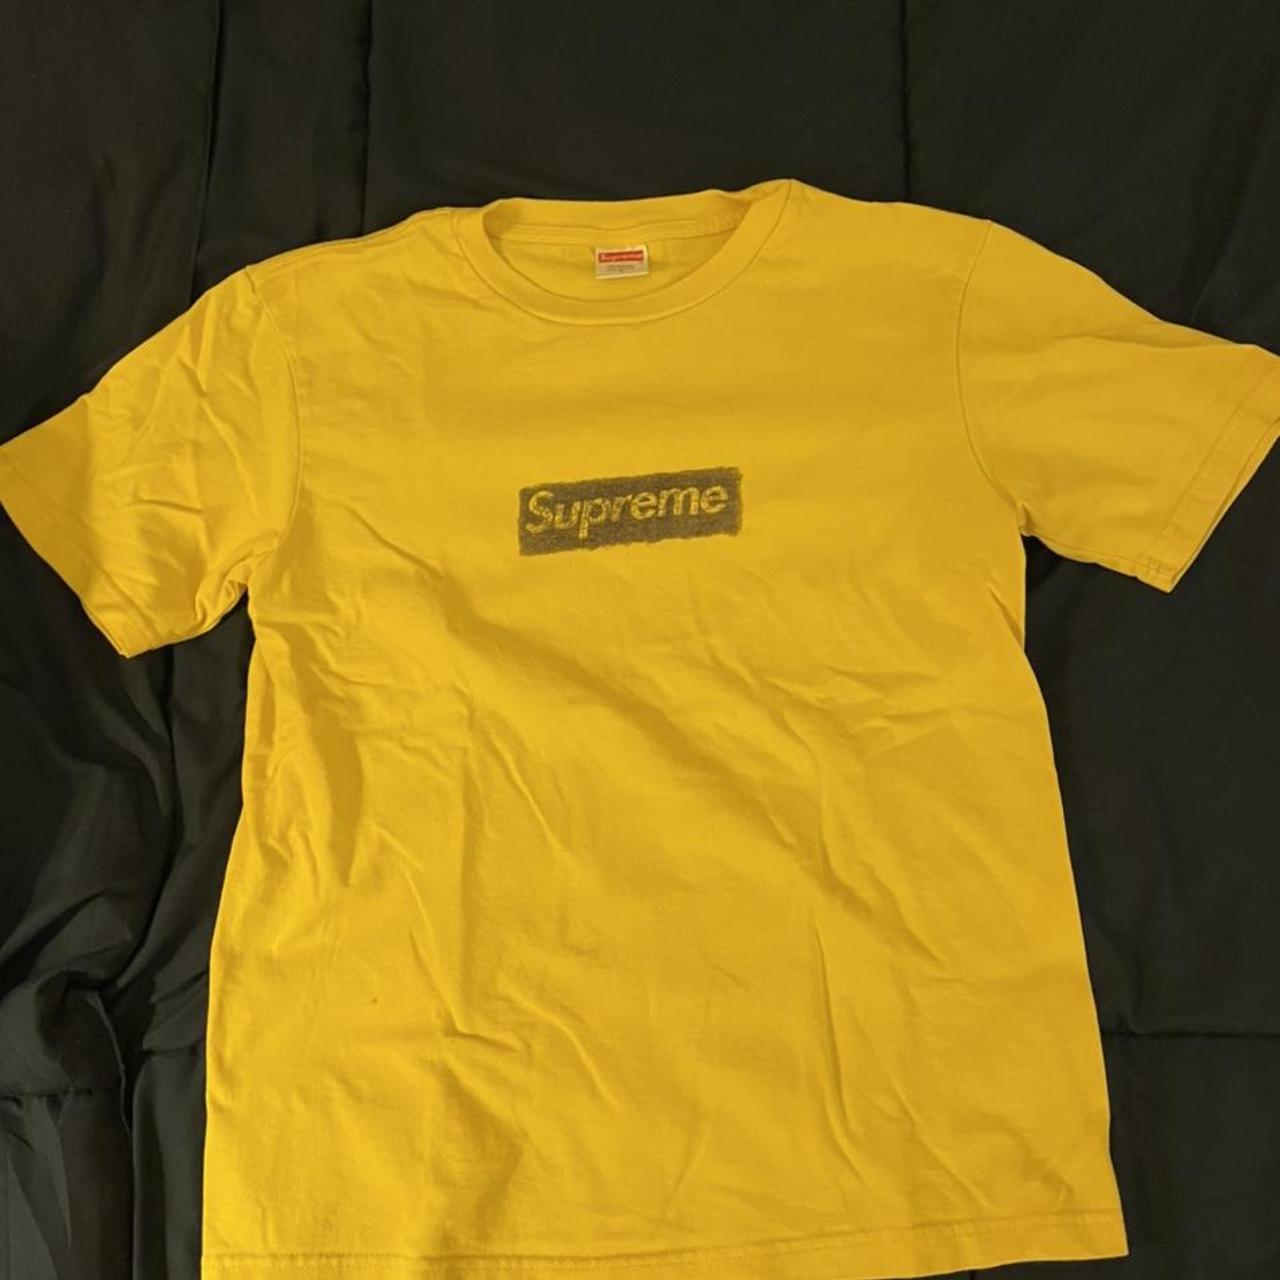 Supreme molodkin box logo tee shirt in yellow, super